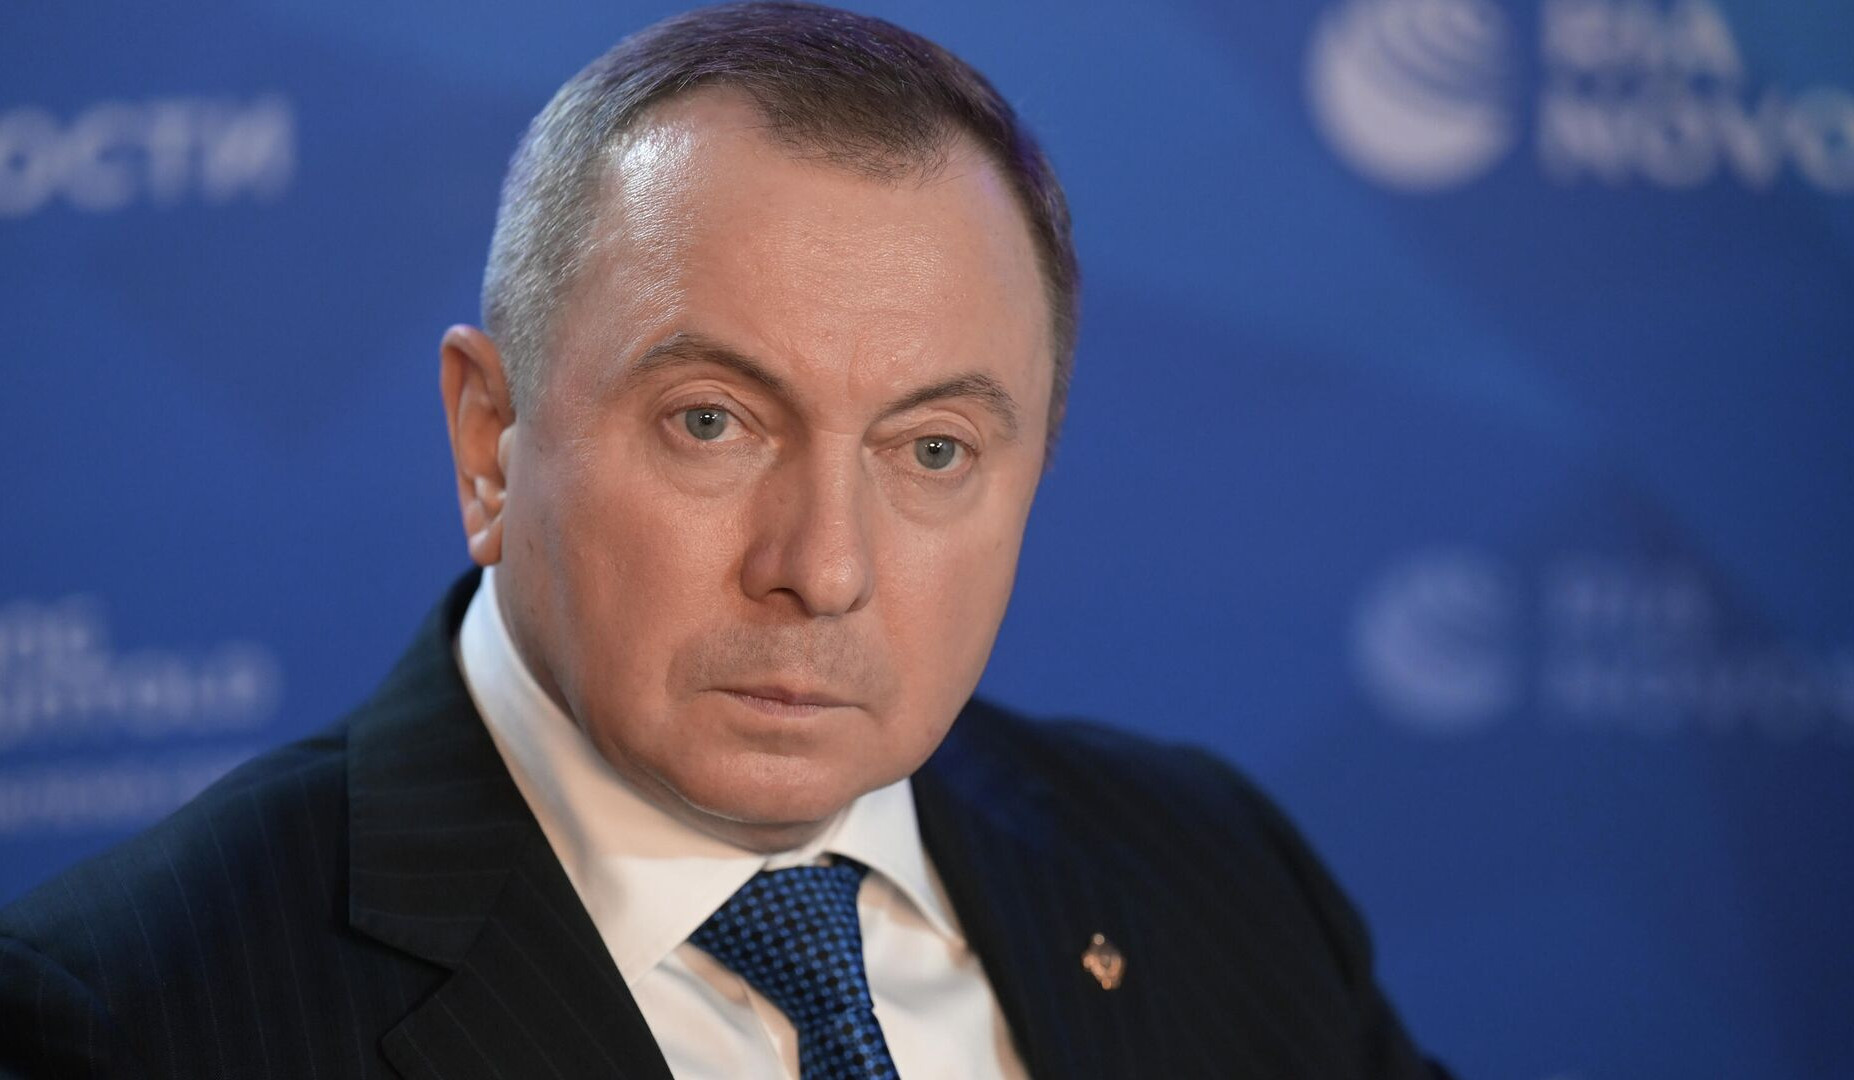 Умер министр иностранных дел Беларуси